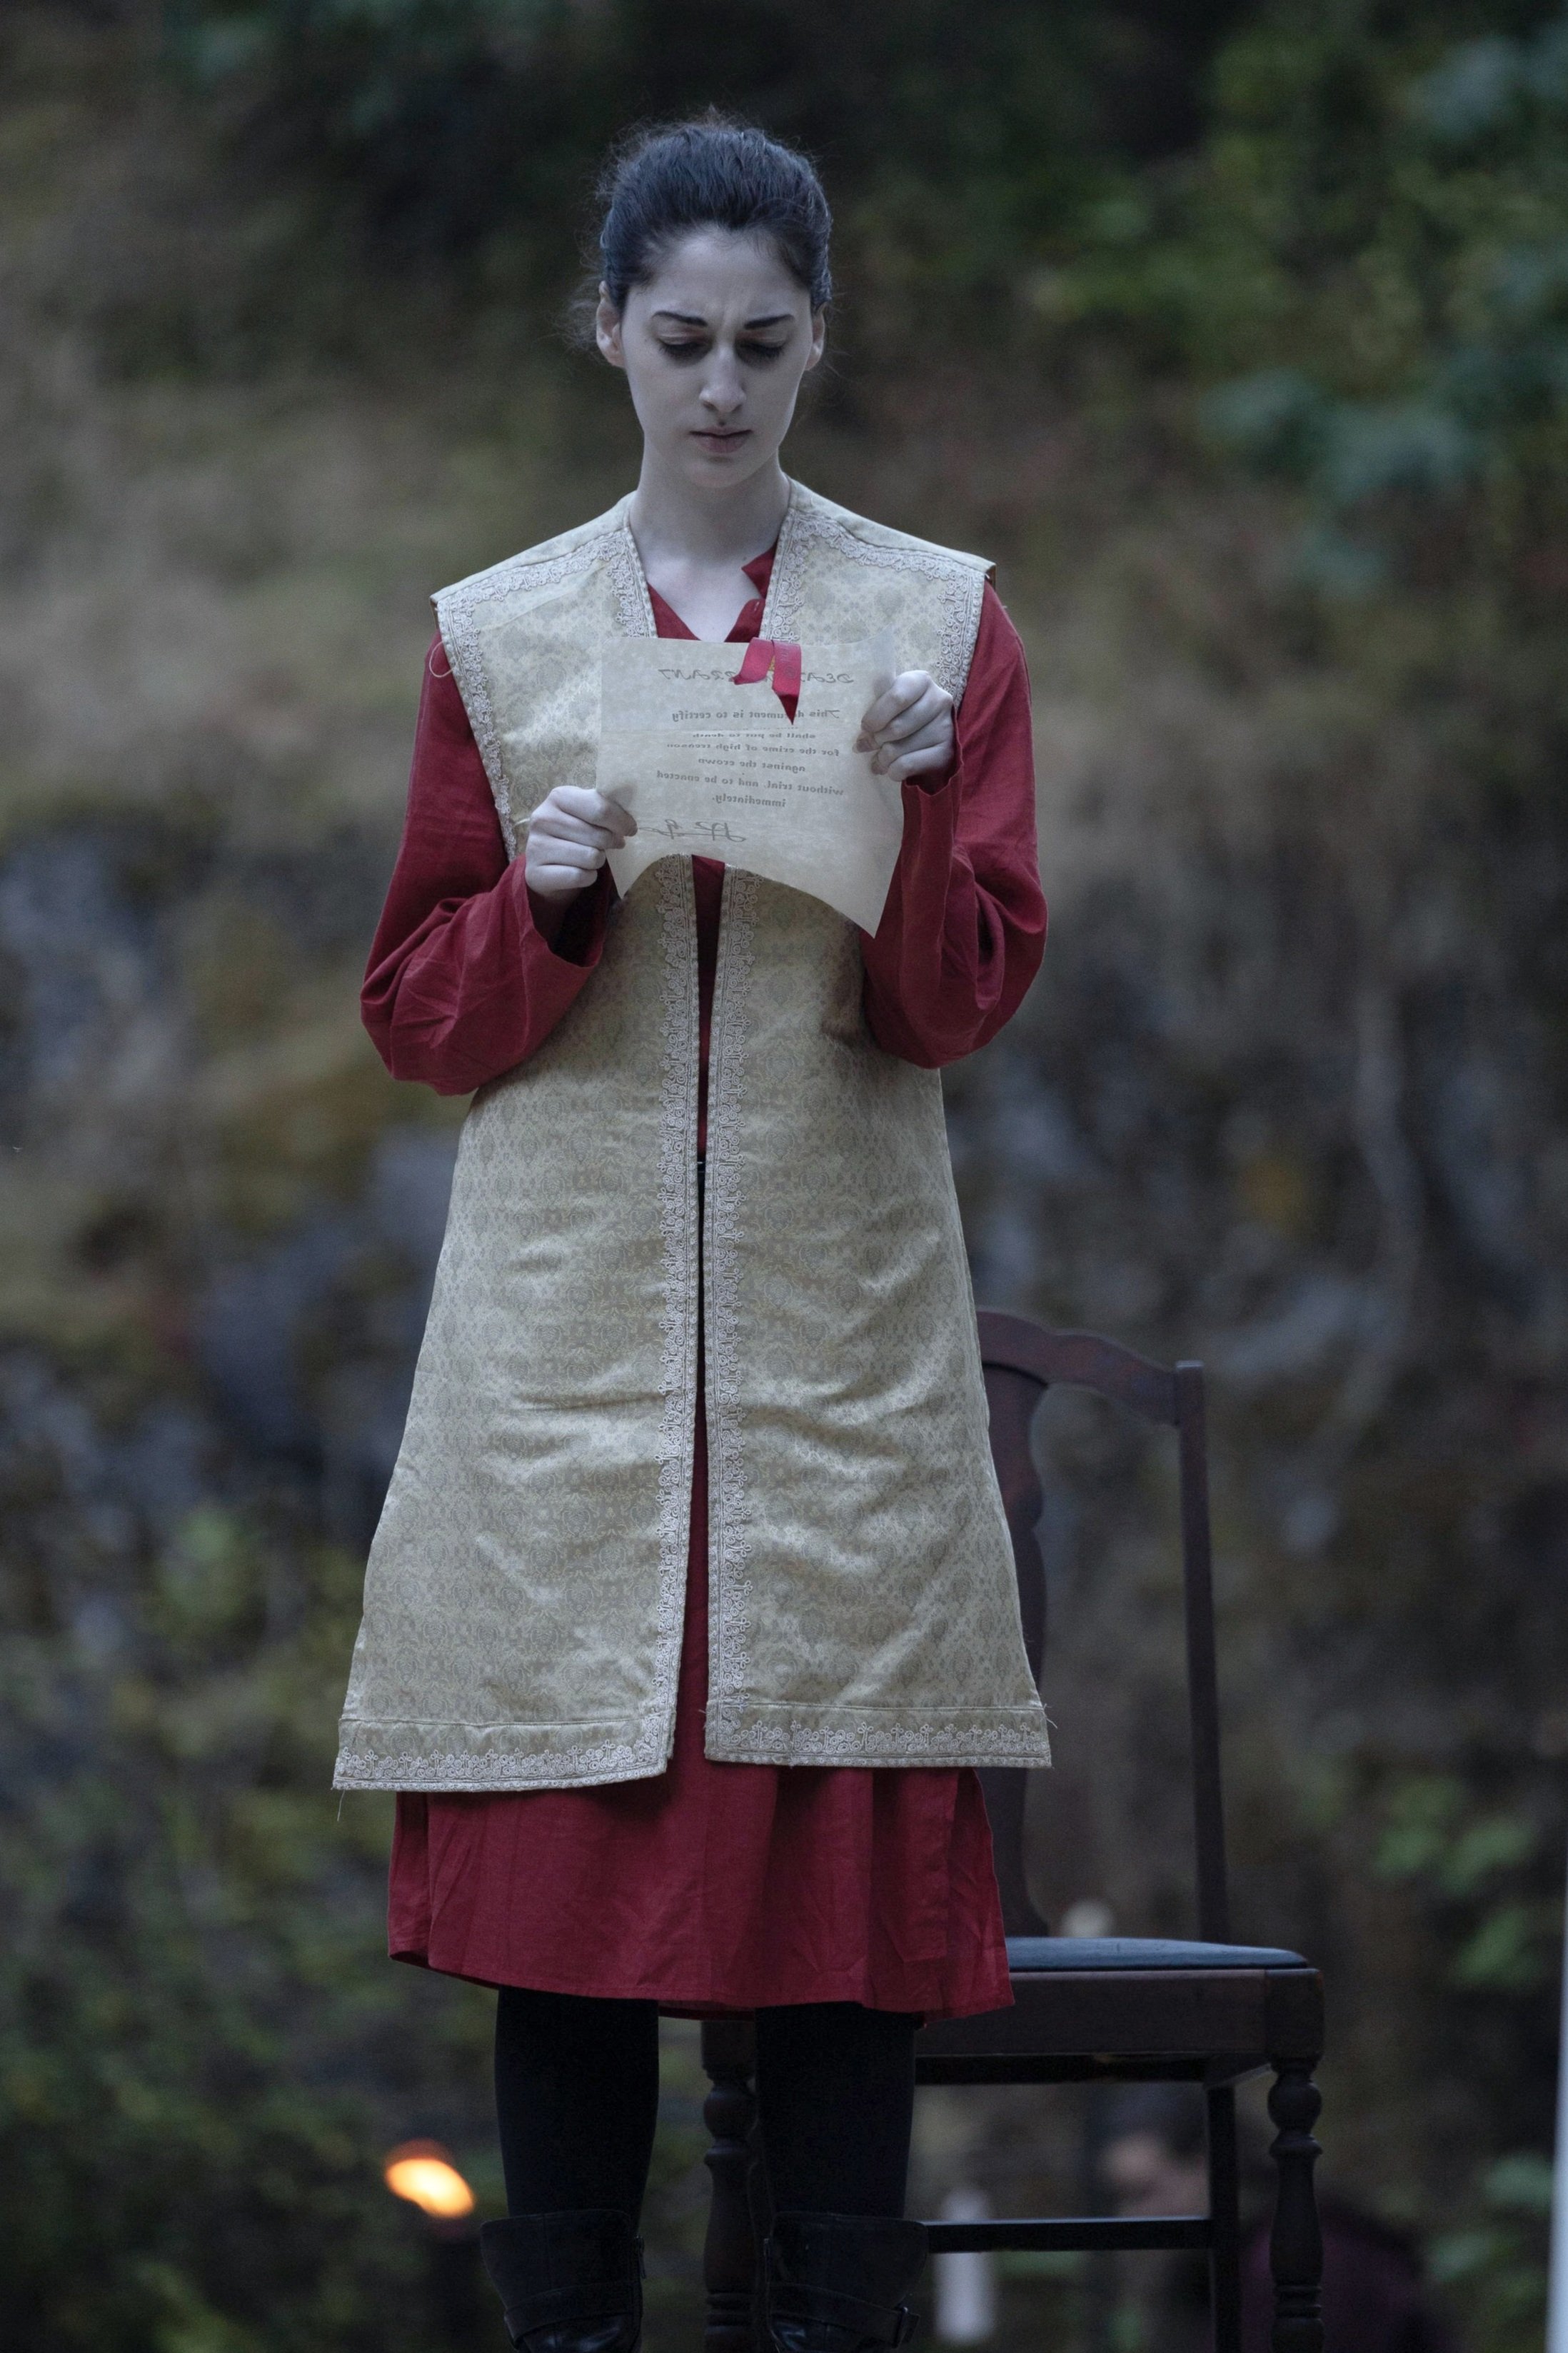 Arabella Rose as Lord Scroop